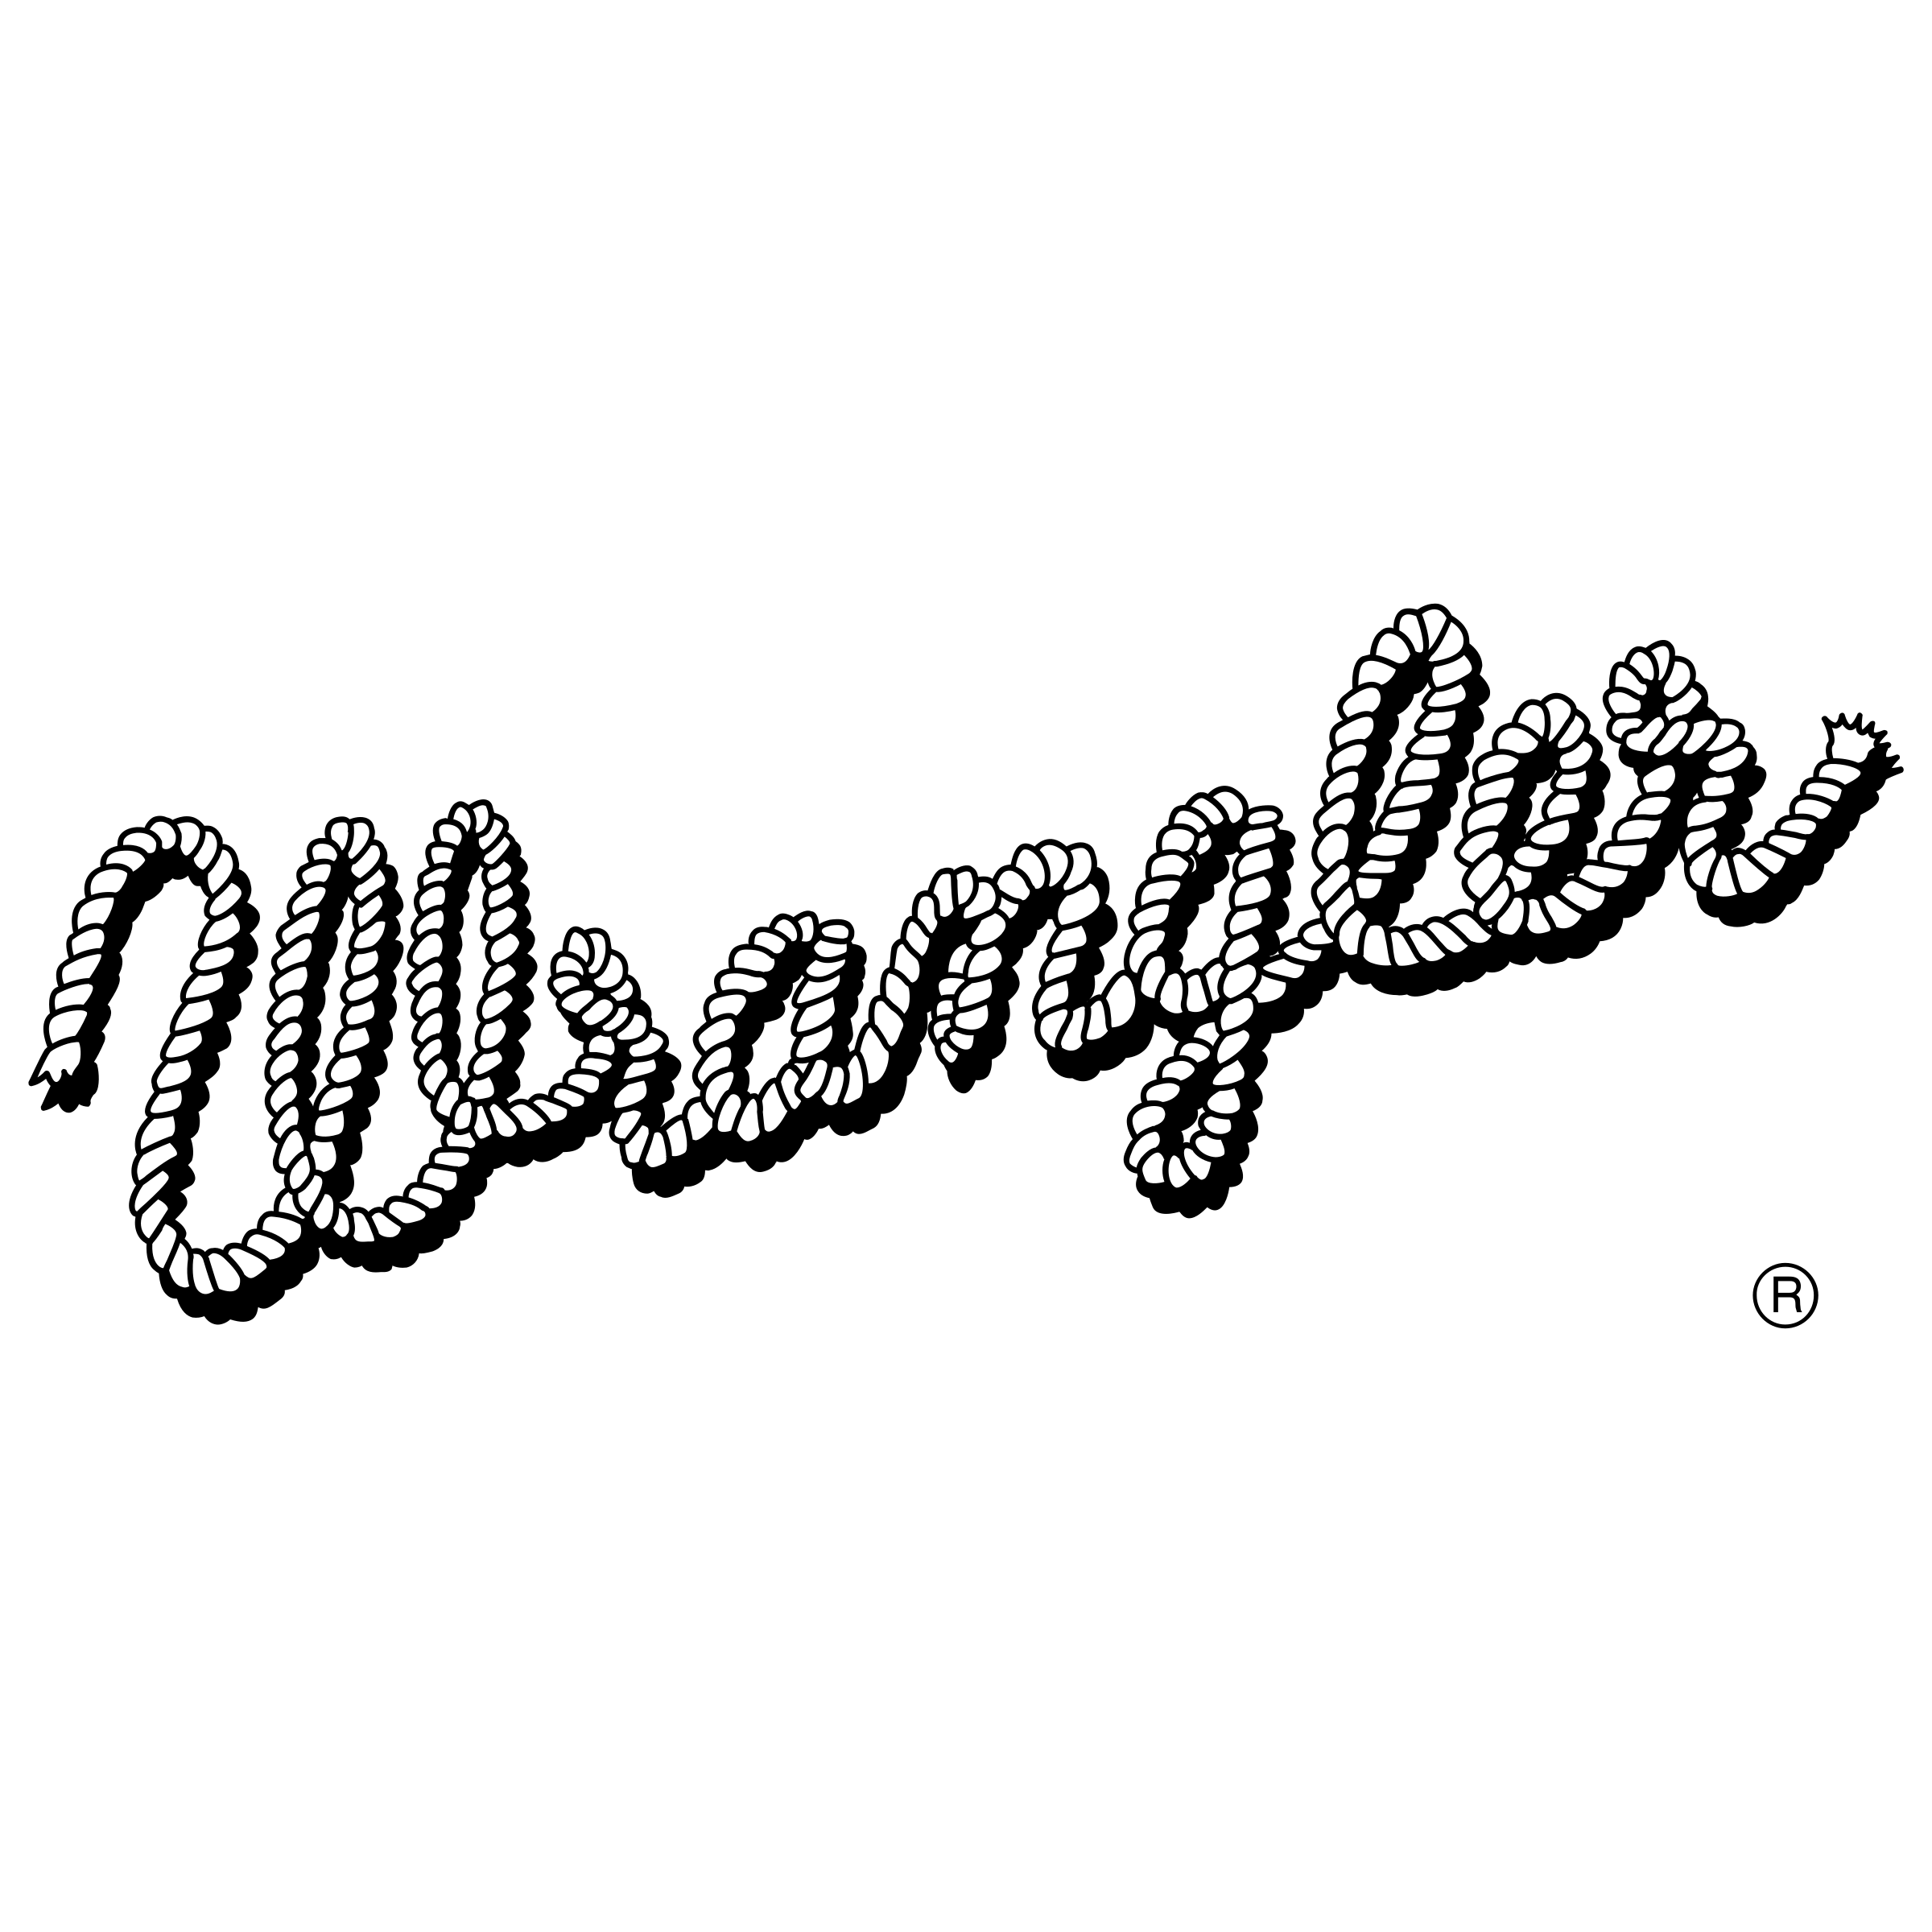 Wrangler Logo Vector at Vectorified.com | Collection of Wrangler Logo ...